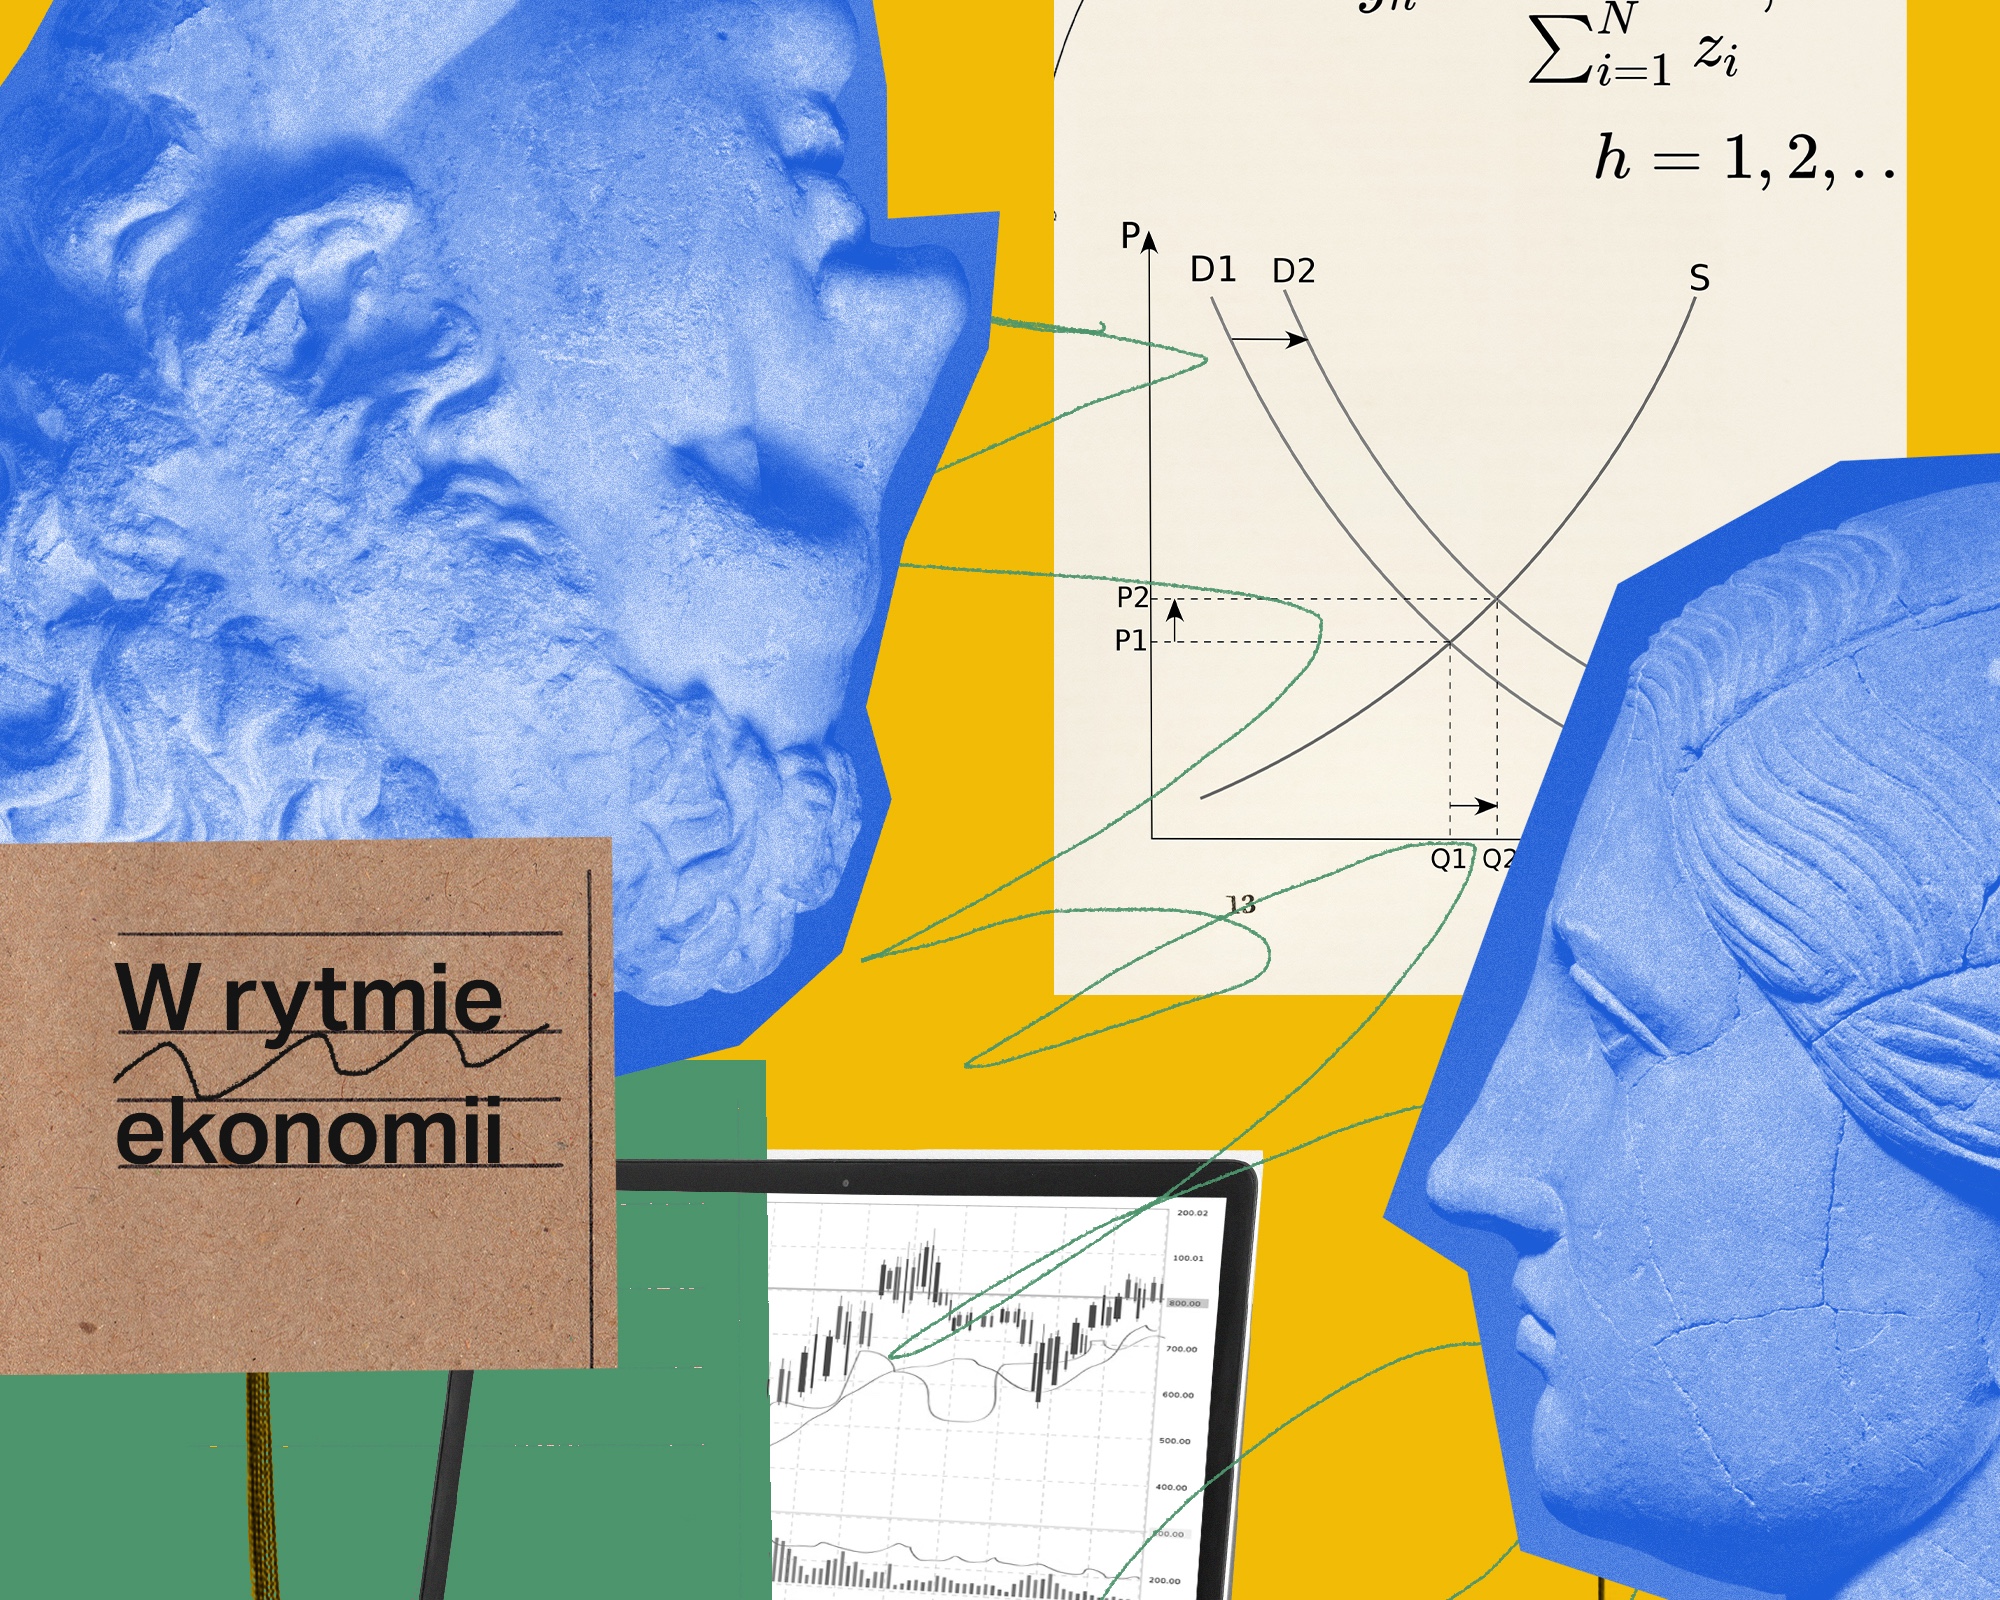 W rytmie ekonomii - podcast WNE UW